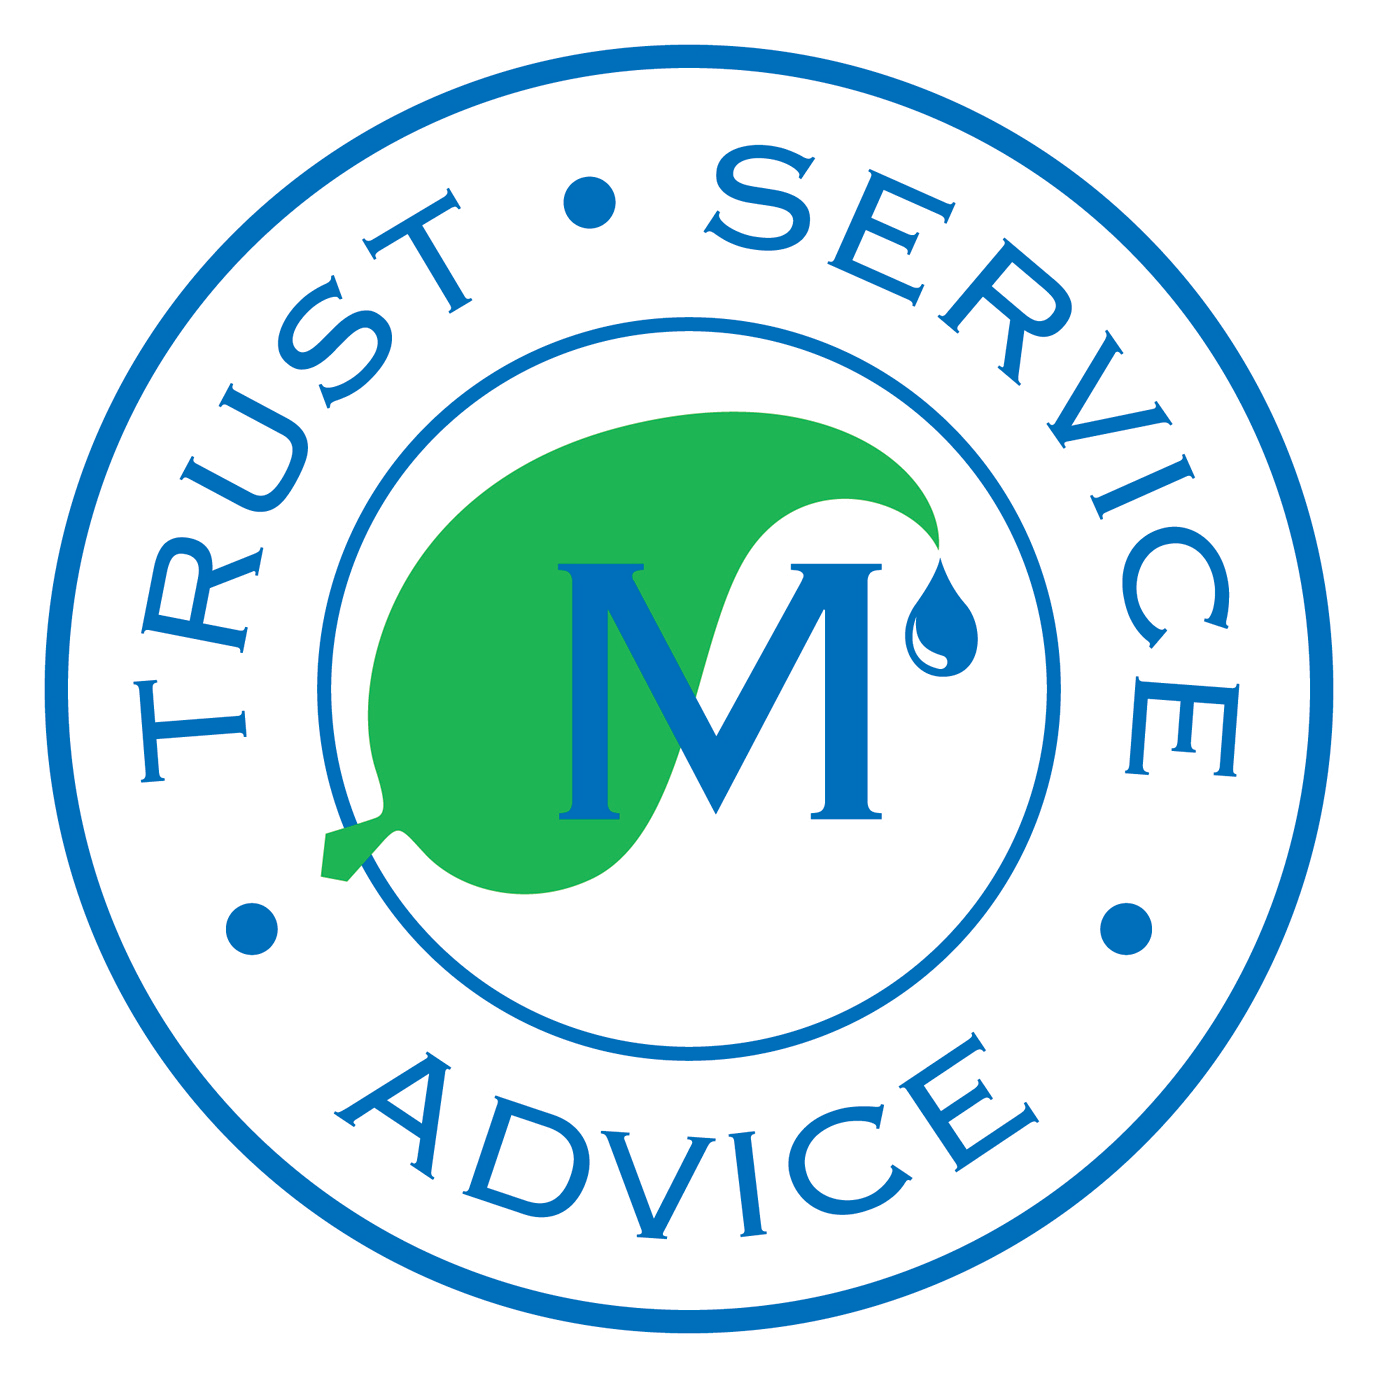 Trust - Service Advice